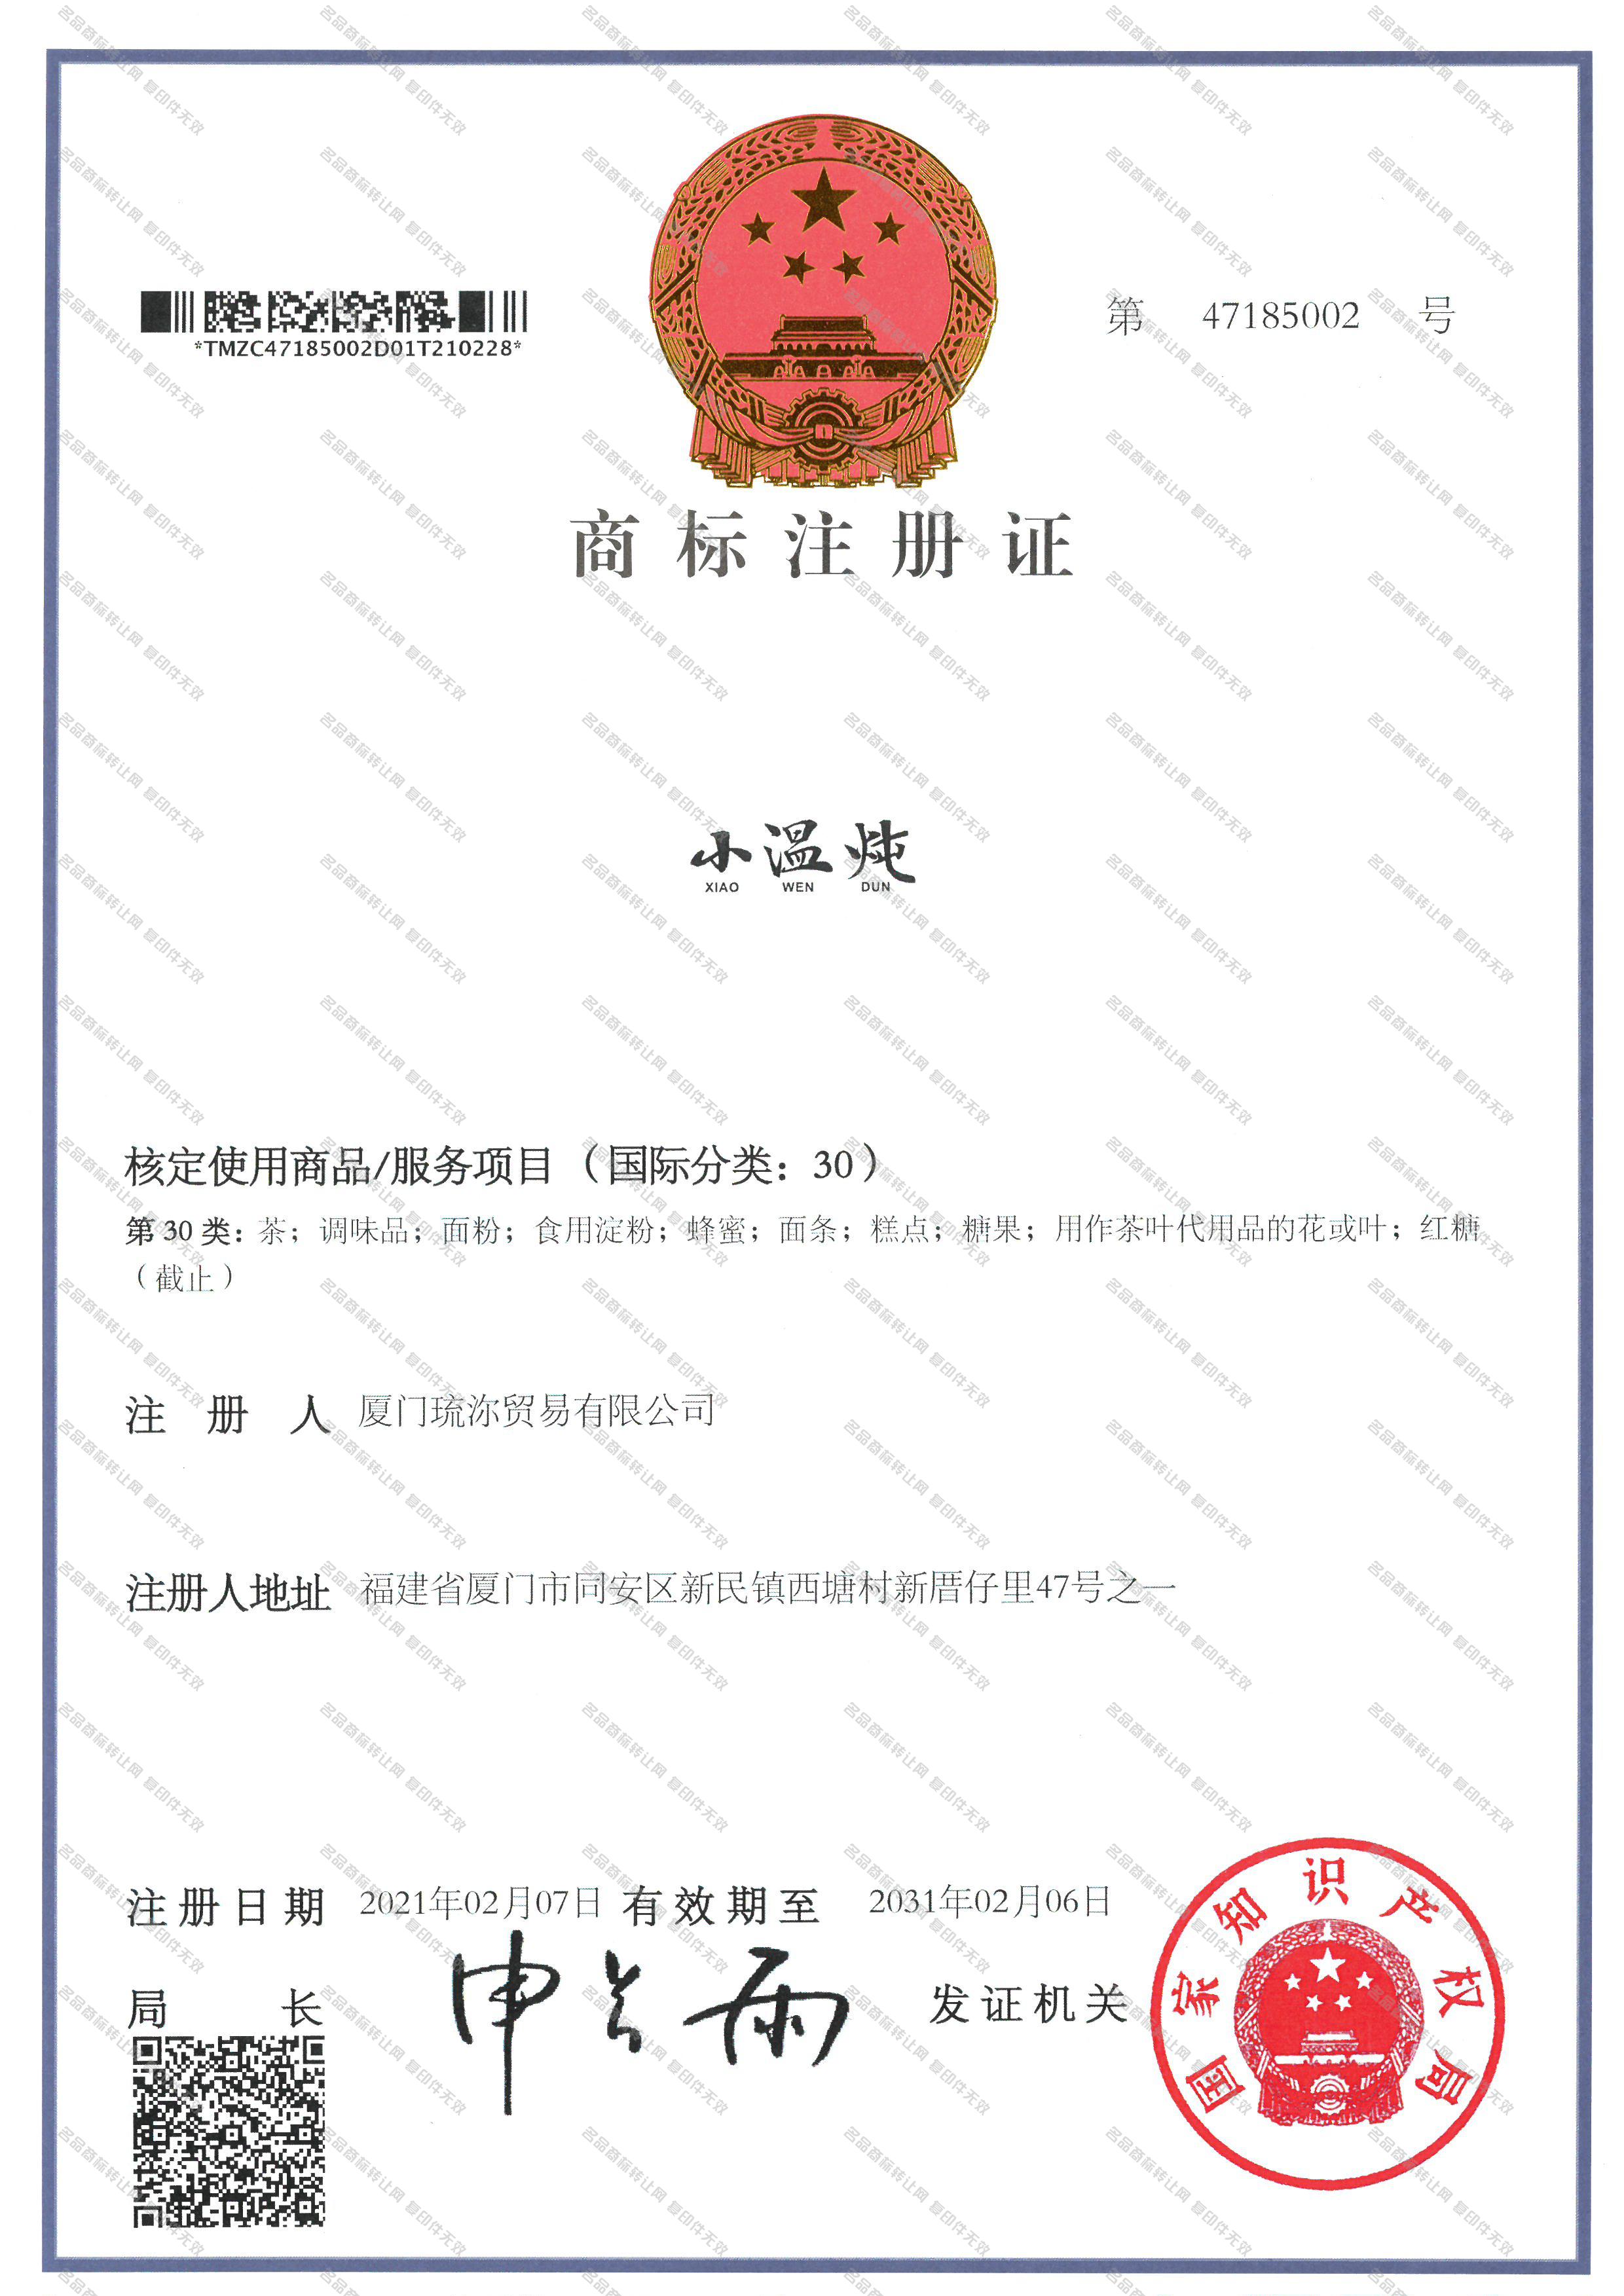 小温炖;XIAOWENDUN注册证